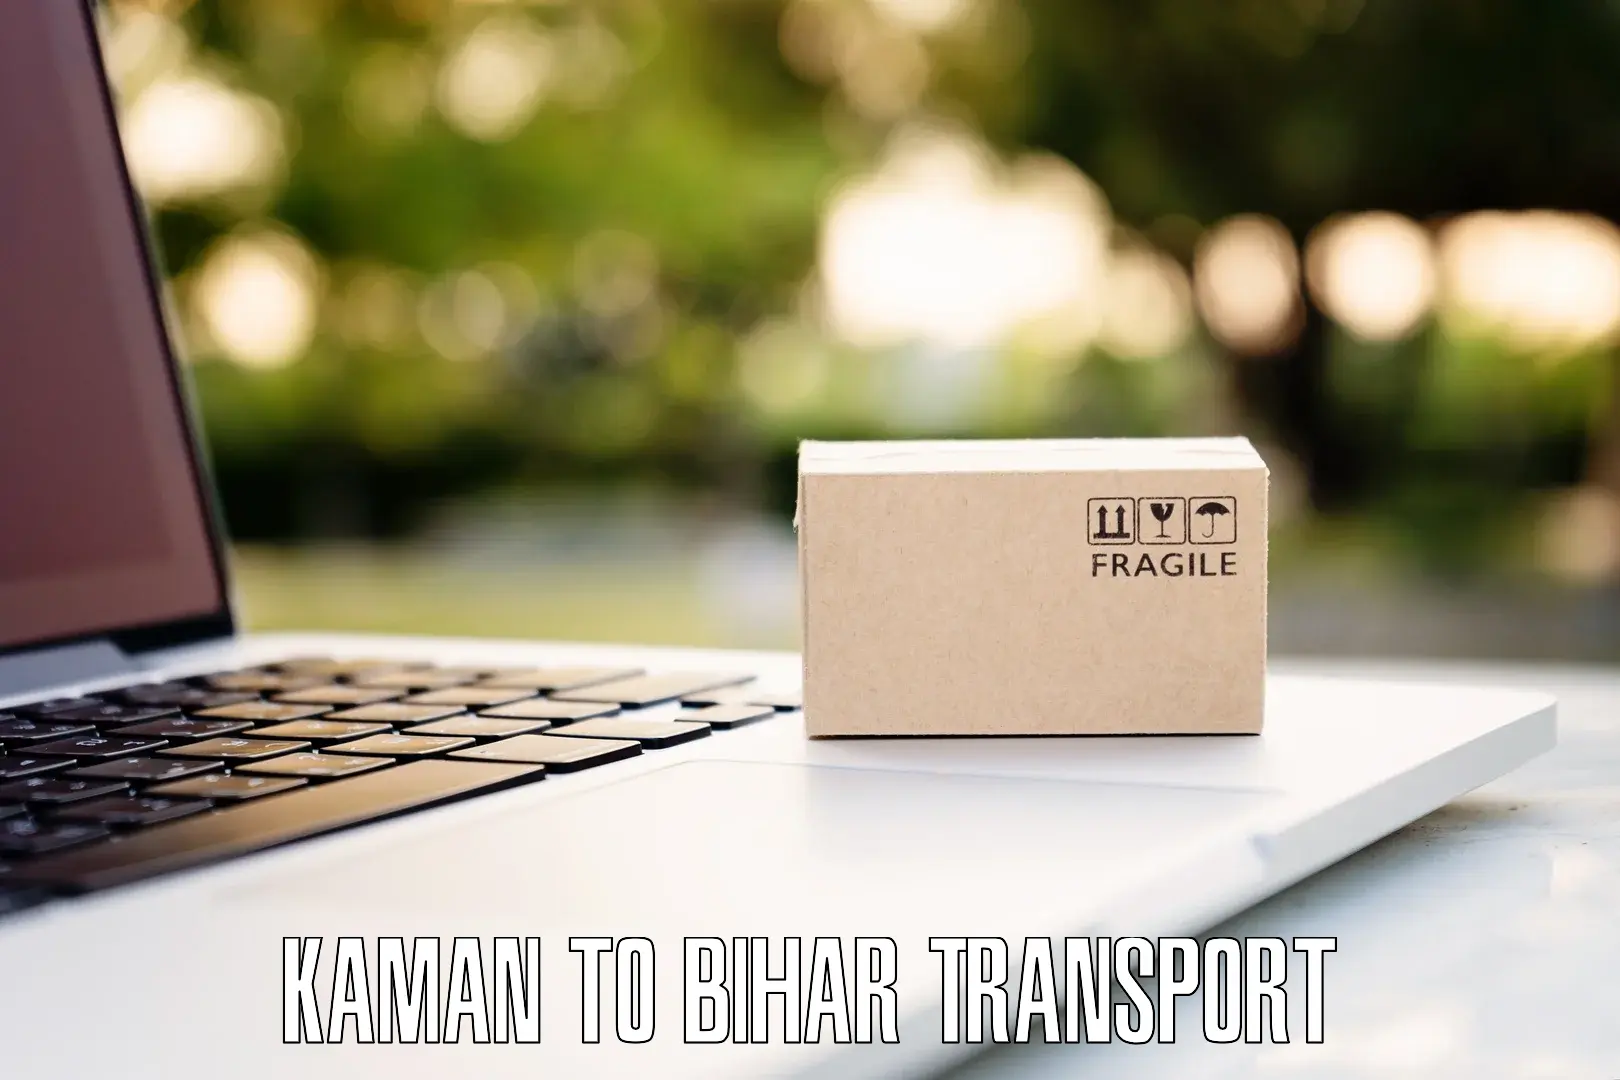 Inland transportation services Kaman to Katoria